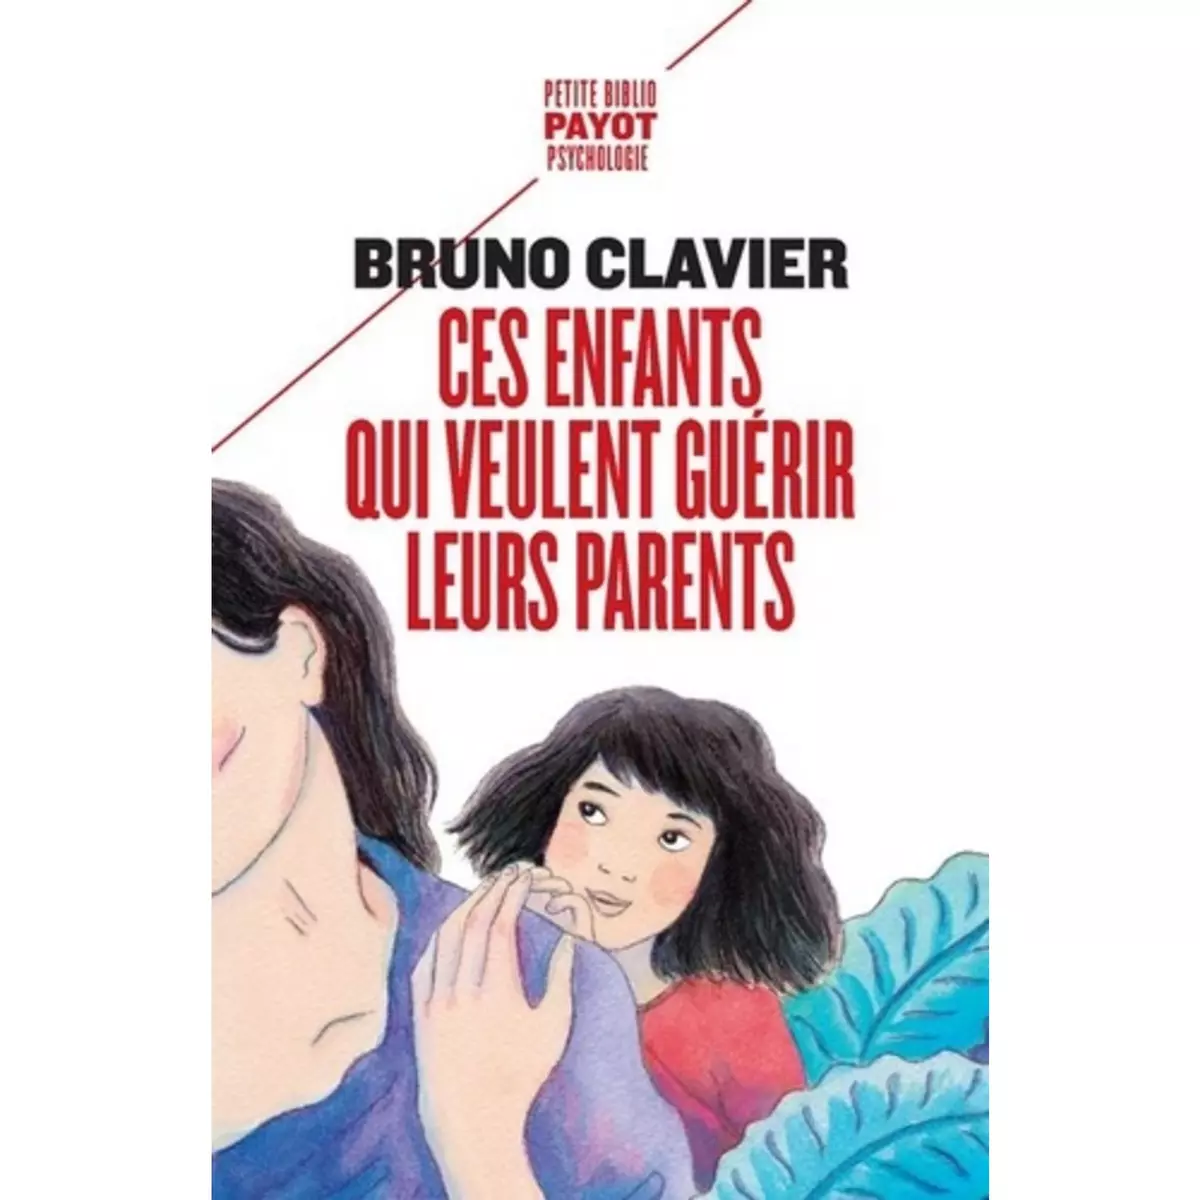  CES ENFANTS QUI VEULENT GUERIR LEURS PARENTS, Clavier Bruno